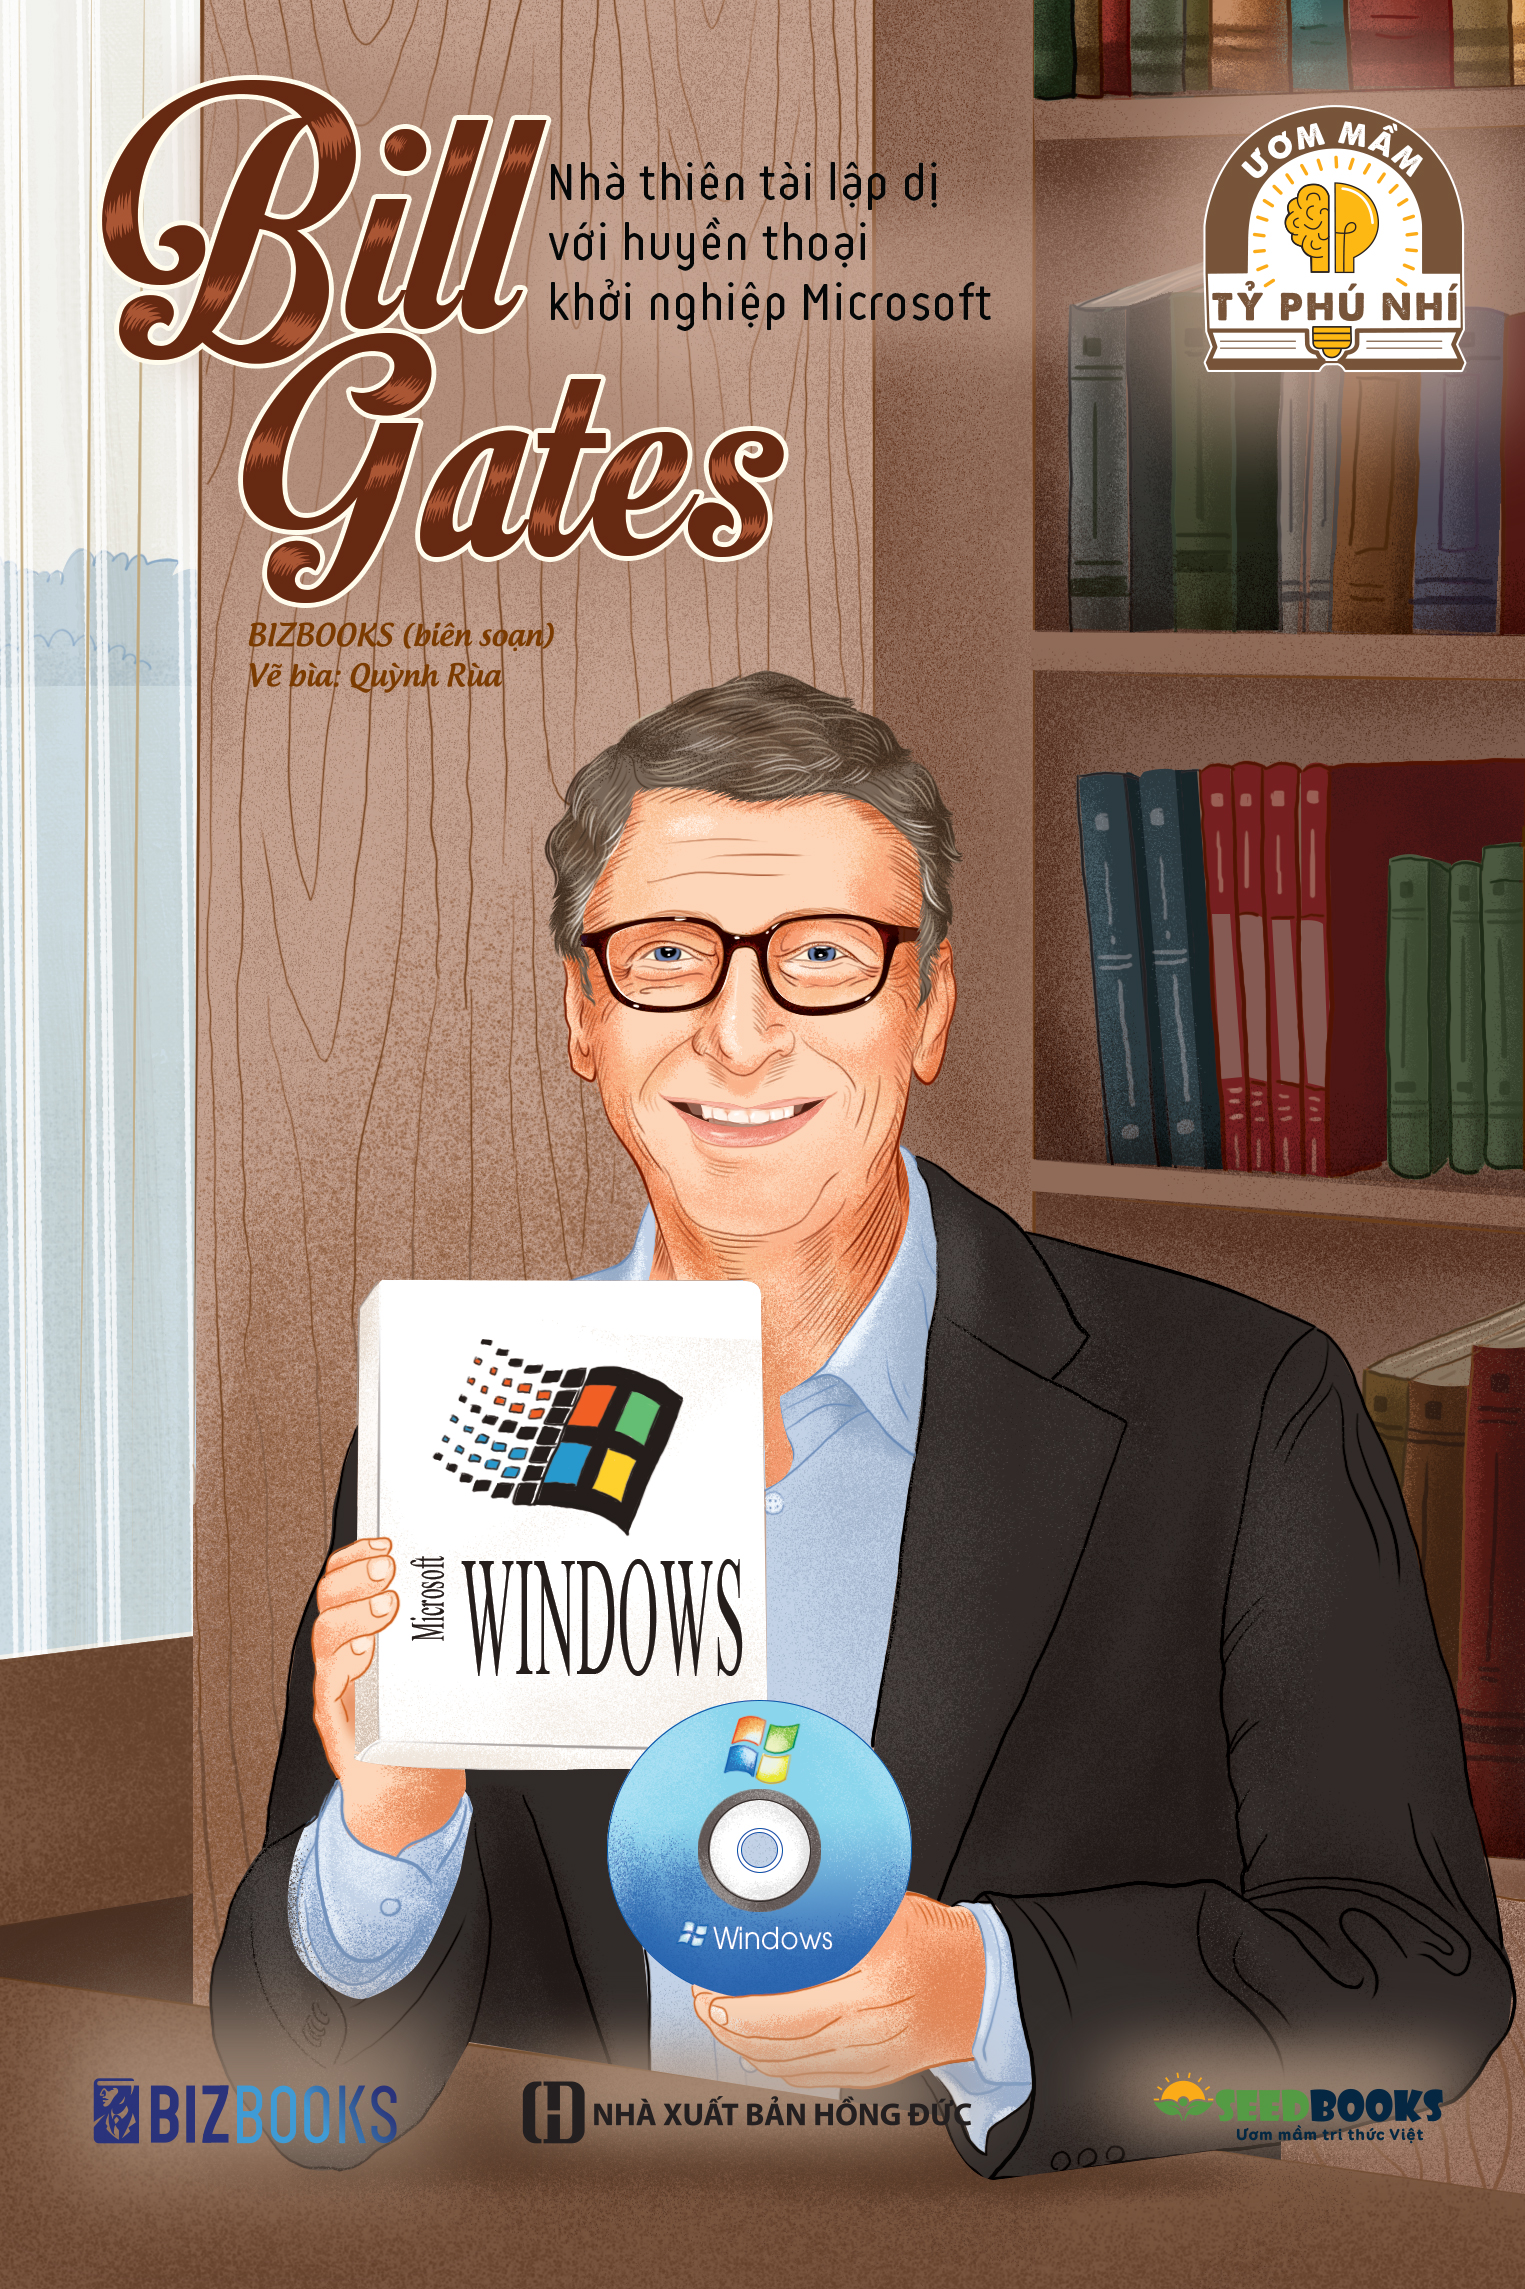 Bill Gates - một biểu tượng công nghệ, một nhà từ thiện, và một người tỷ phú. Bức ảnh này cho thấy sự nghiêm túc và sáng tạo của ông, một người luôn tìm cách sáng tạo để giải quyết các vấn đề thế giới đang đối mặt.